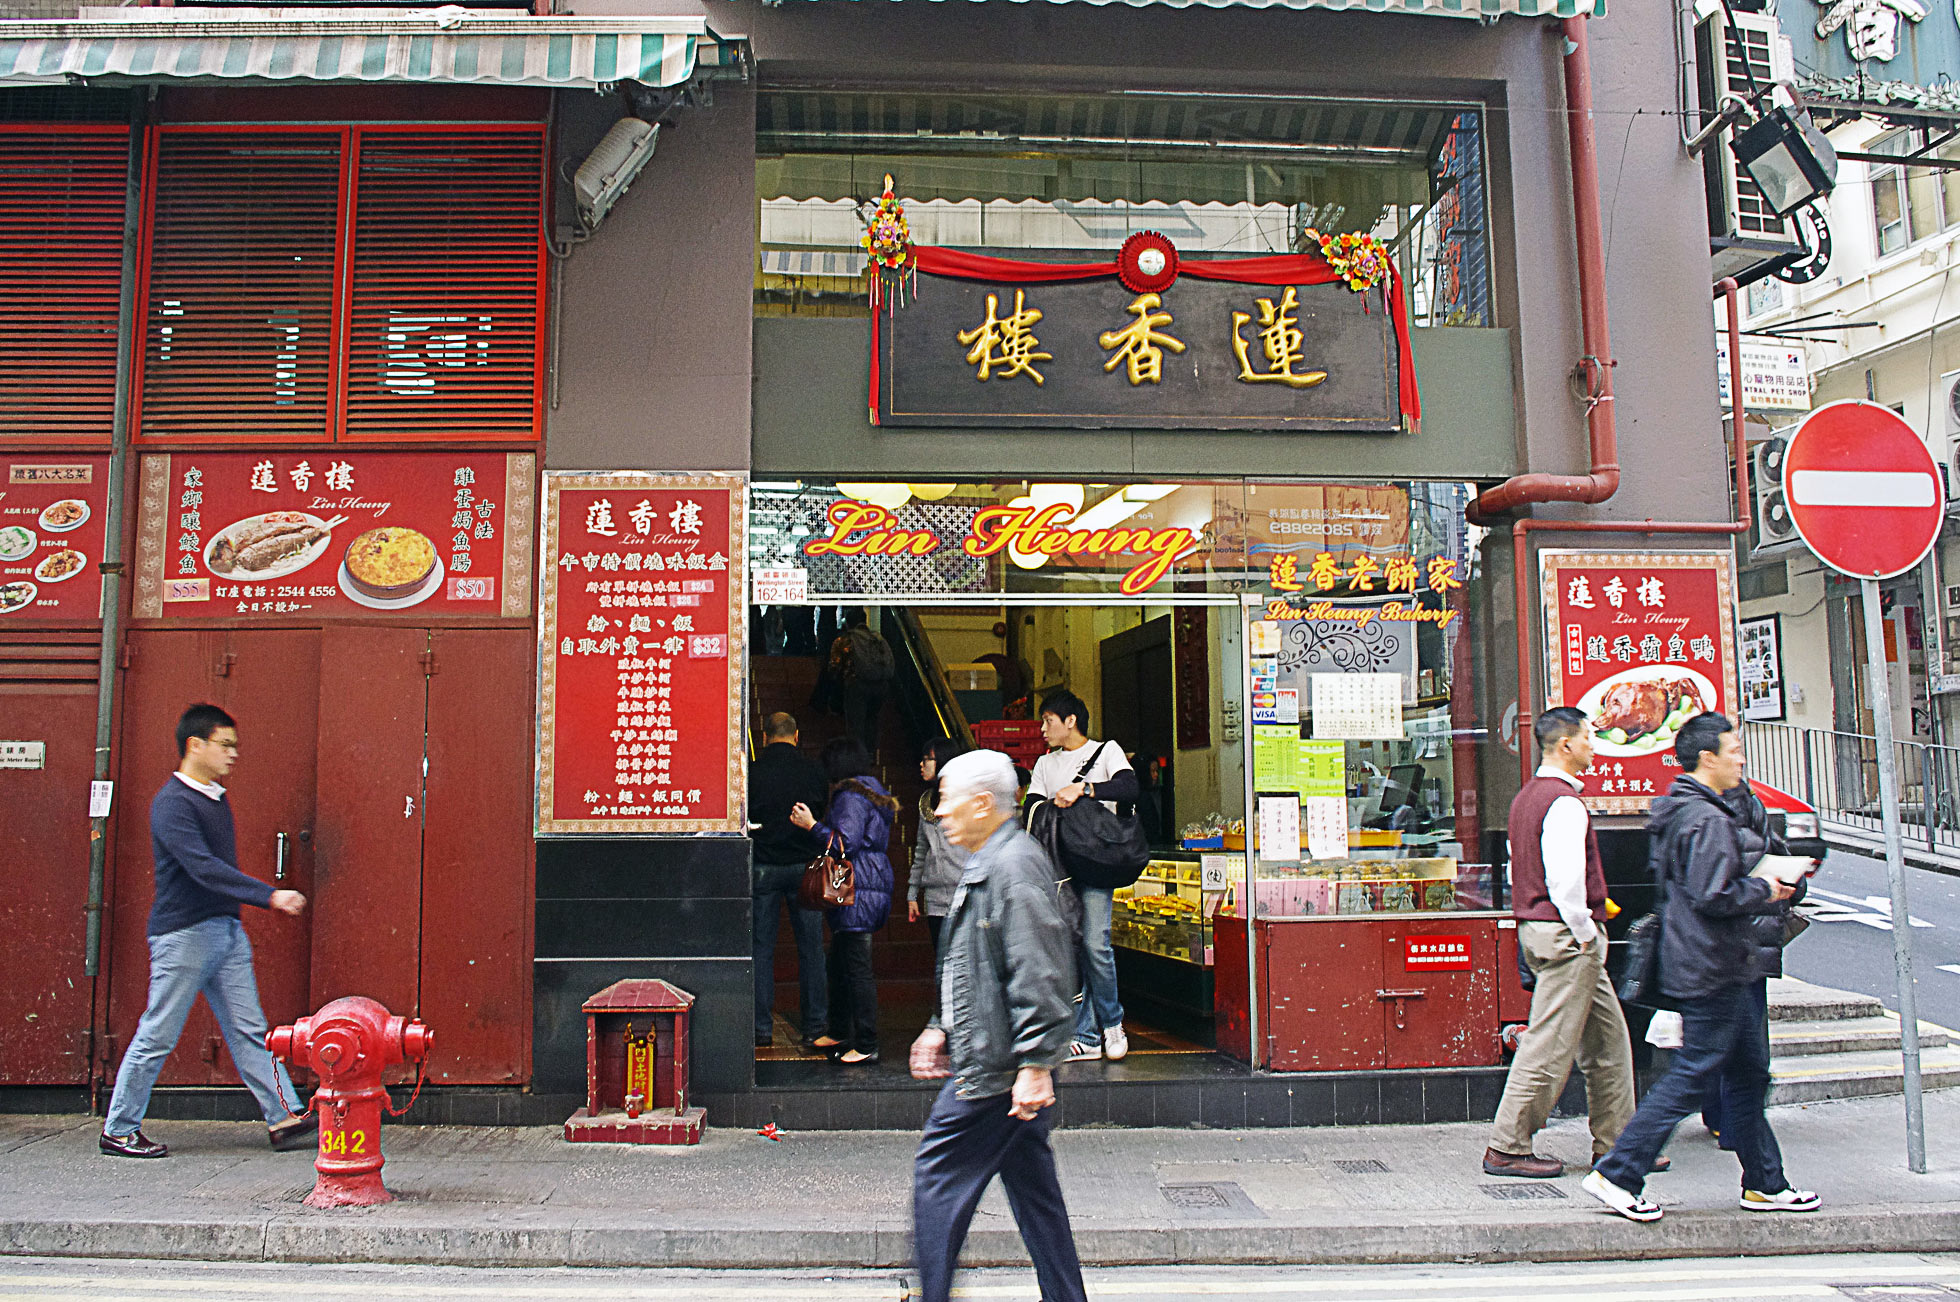 Lin Heung Tea House in Hong Kong. Photo by alphacityguides.